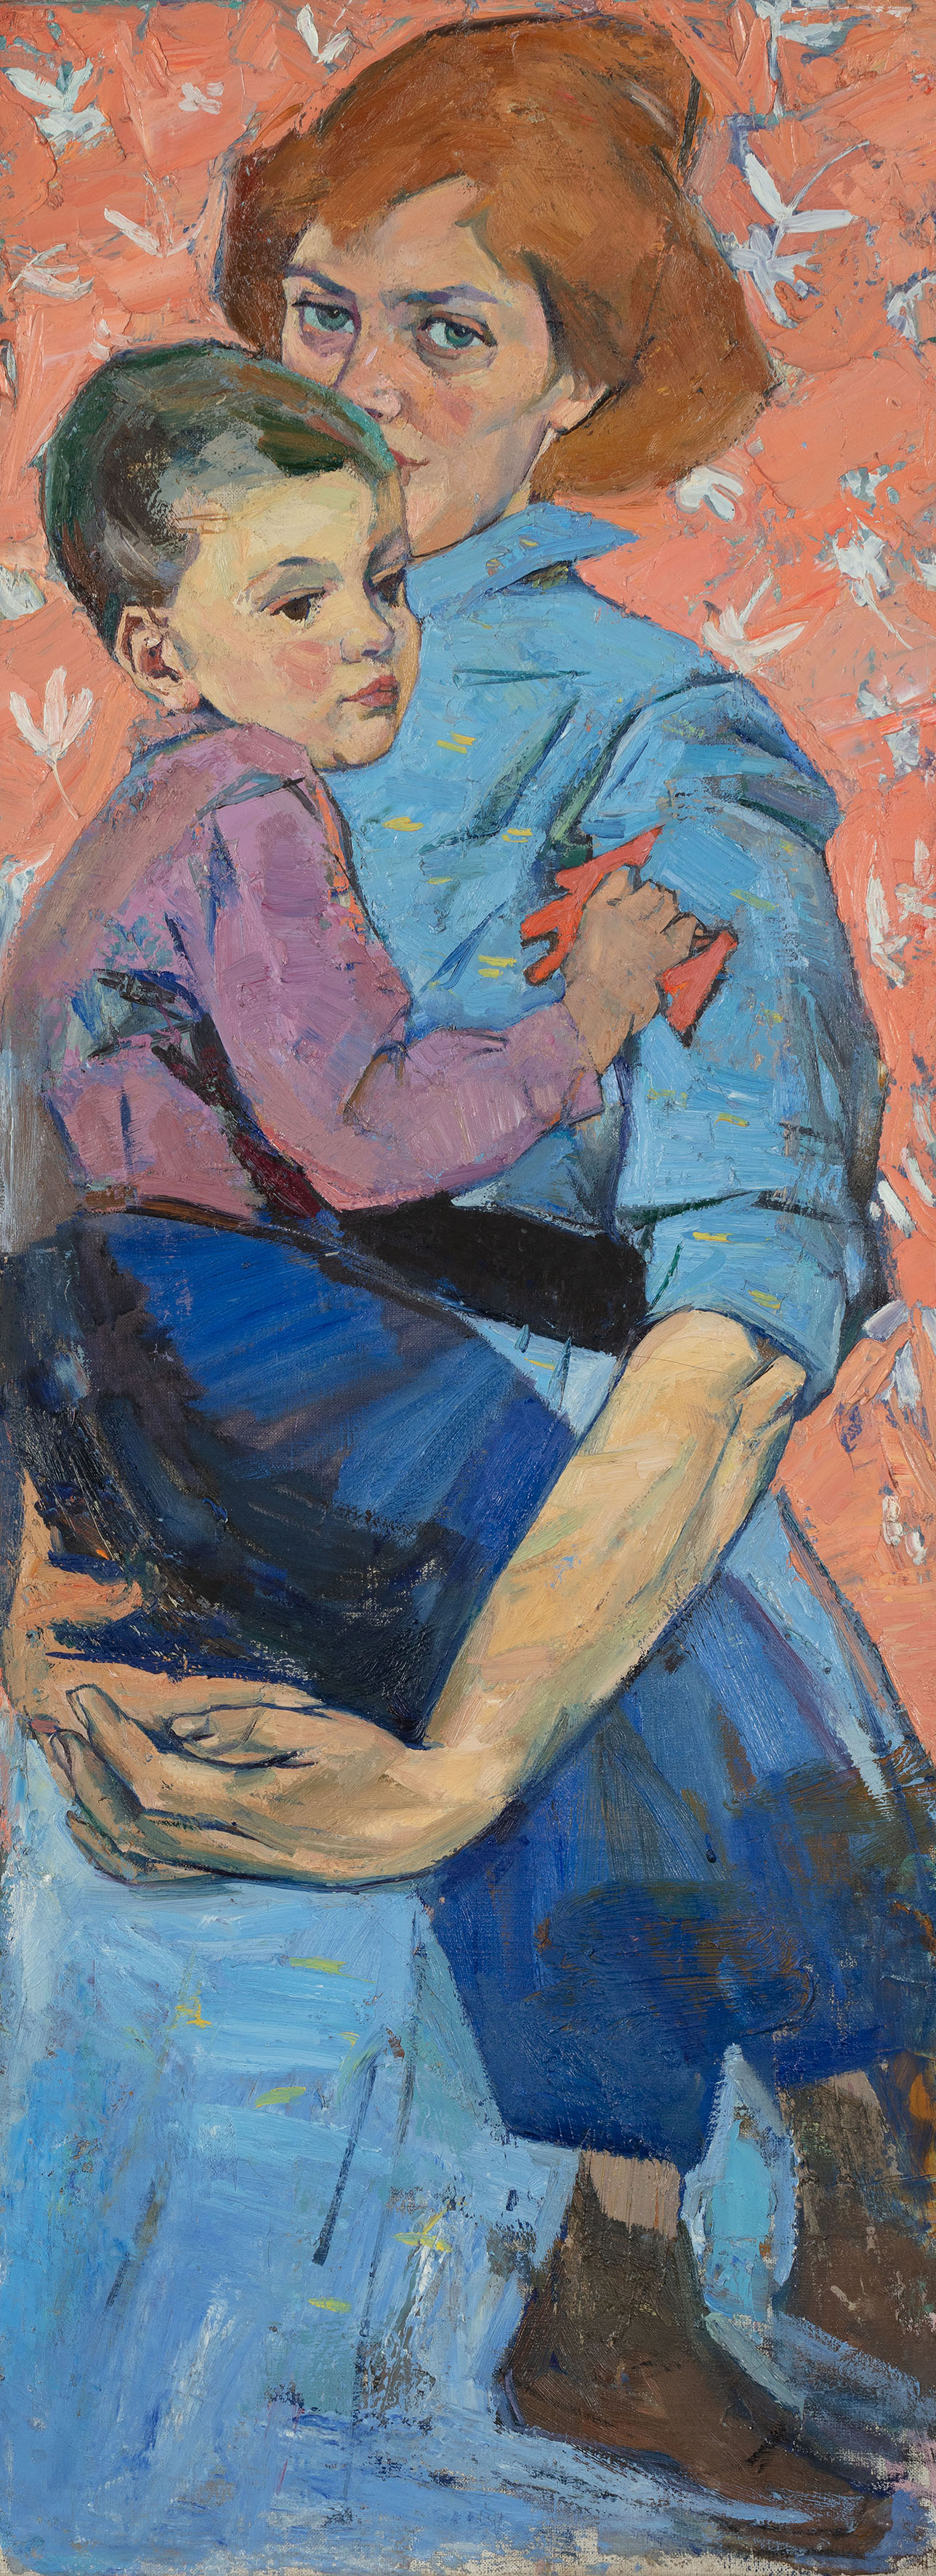 Автопортрет з сином. 1960 р. Зібрання Національного художнього музею України.